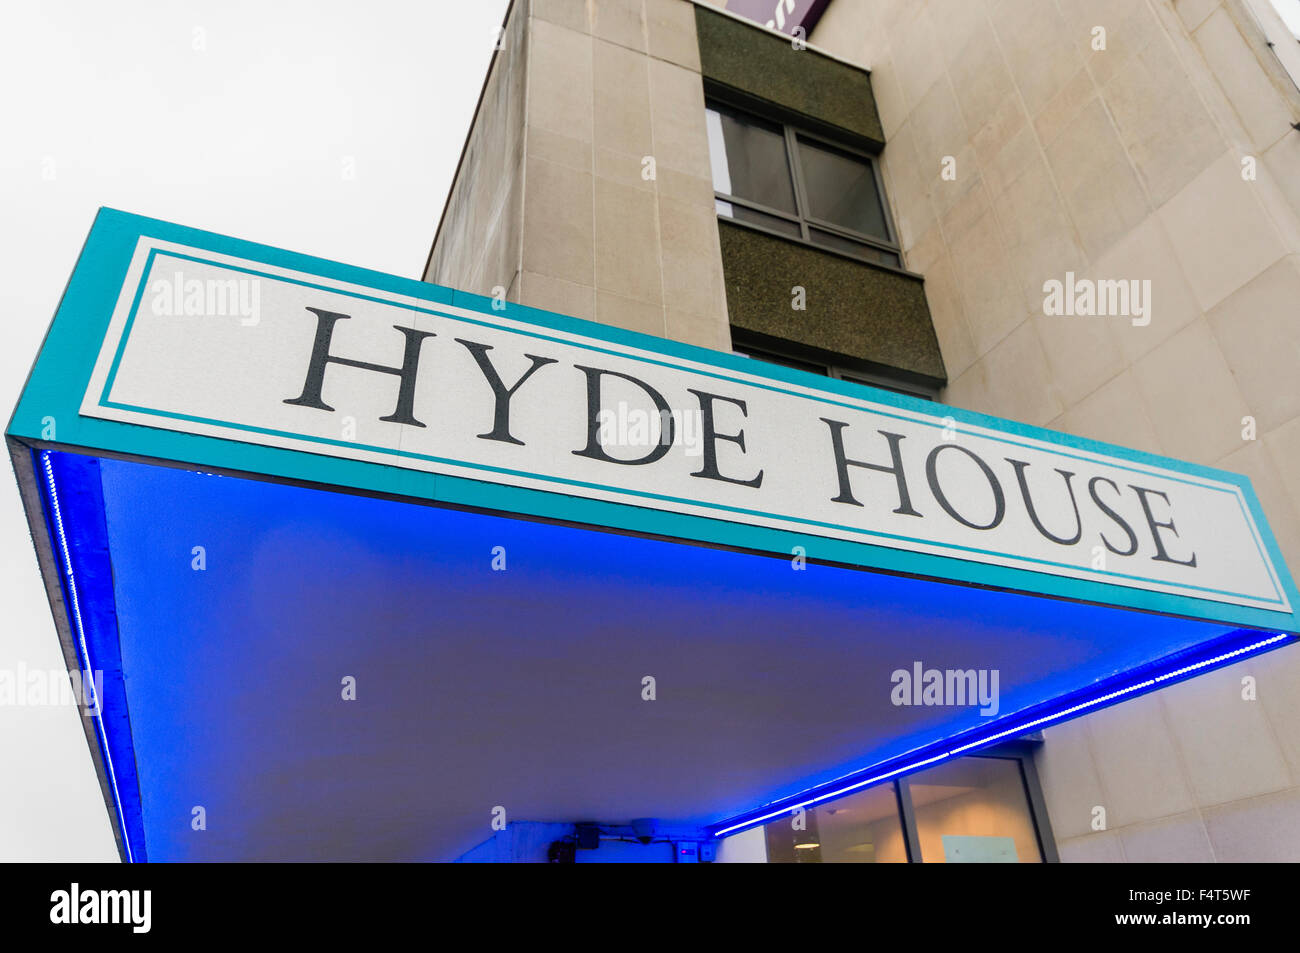 Hyde House, Edgware Road, Hendon, London Stock Photo